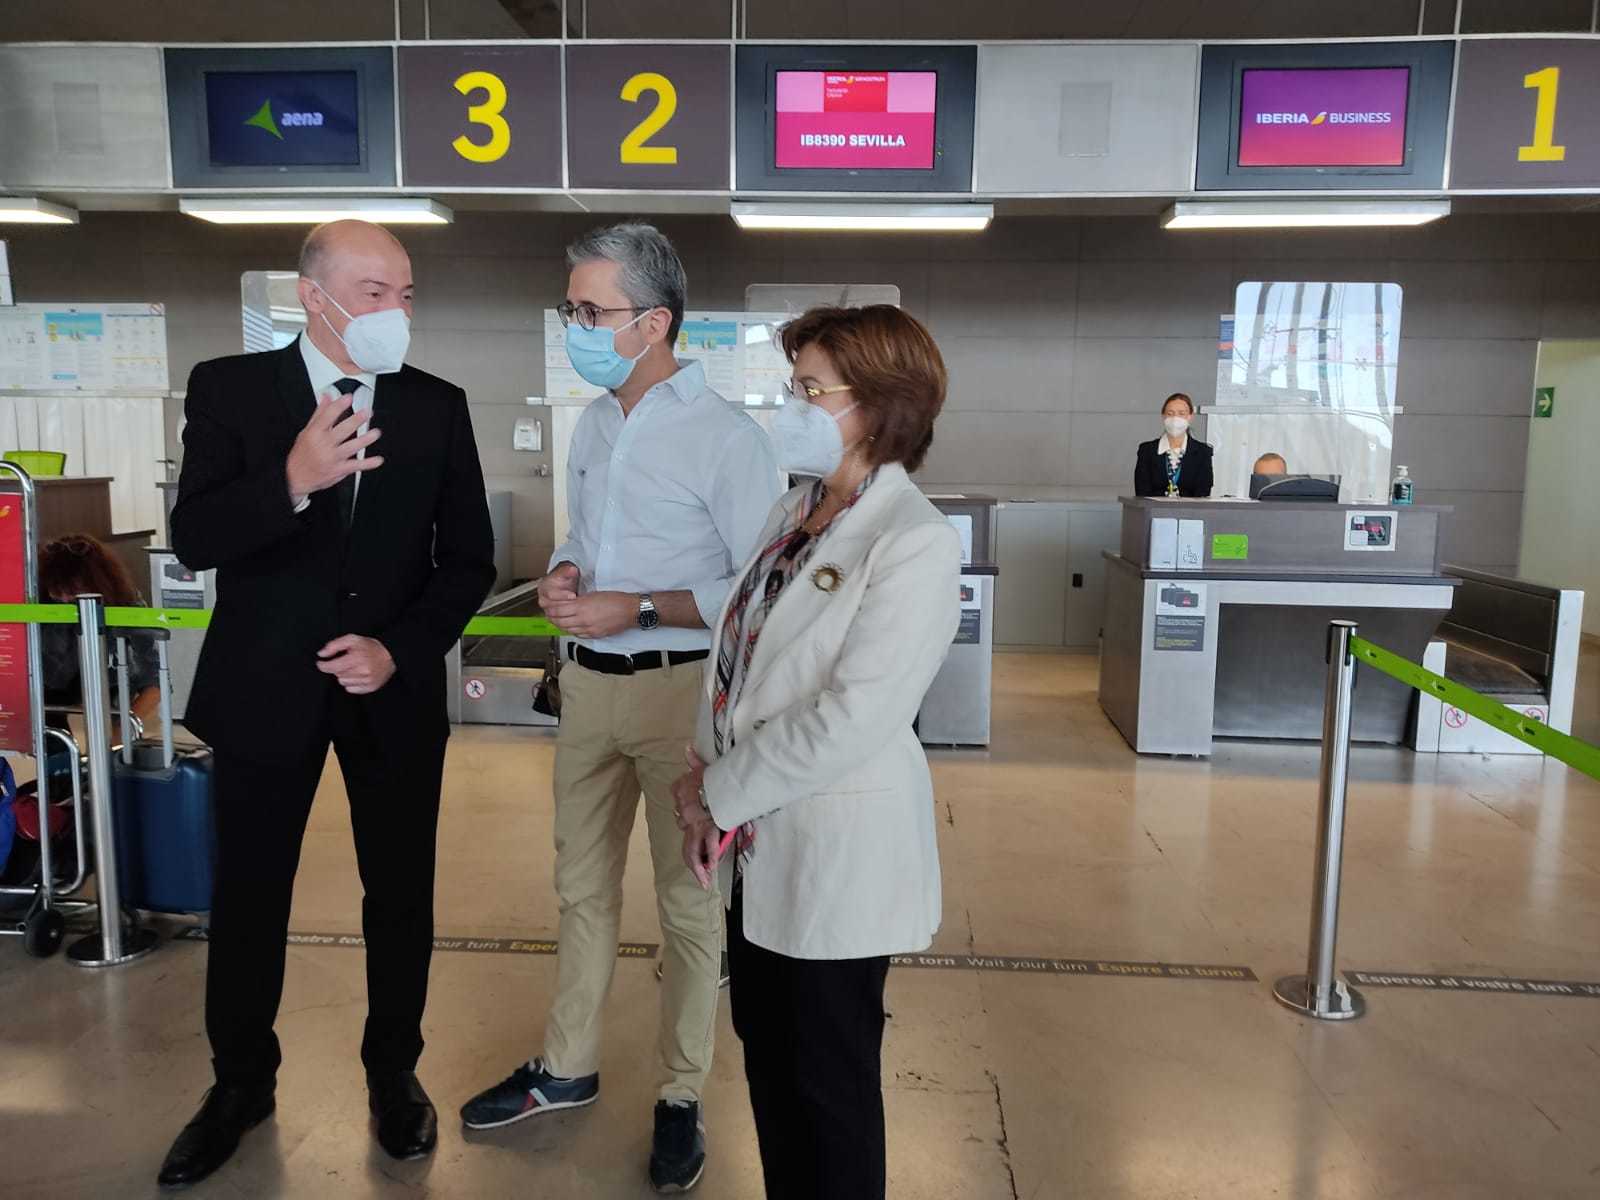 La ruta entre los aeropuertos de Castelln y Sevilla aspira a mover 1.200 turistas este verano